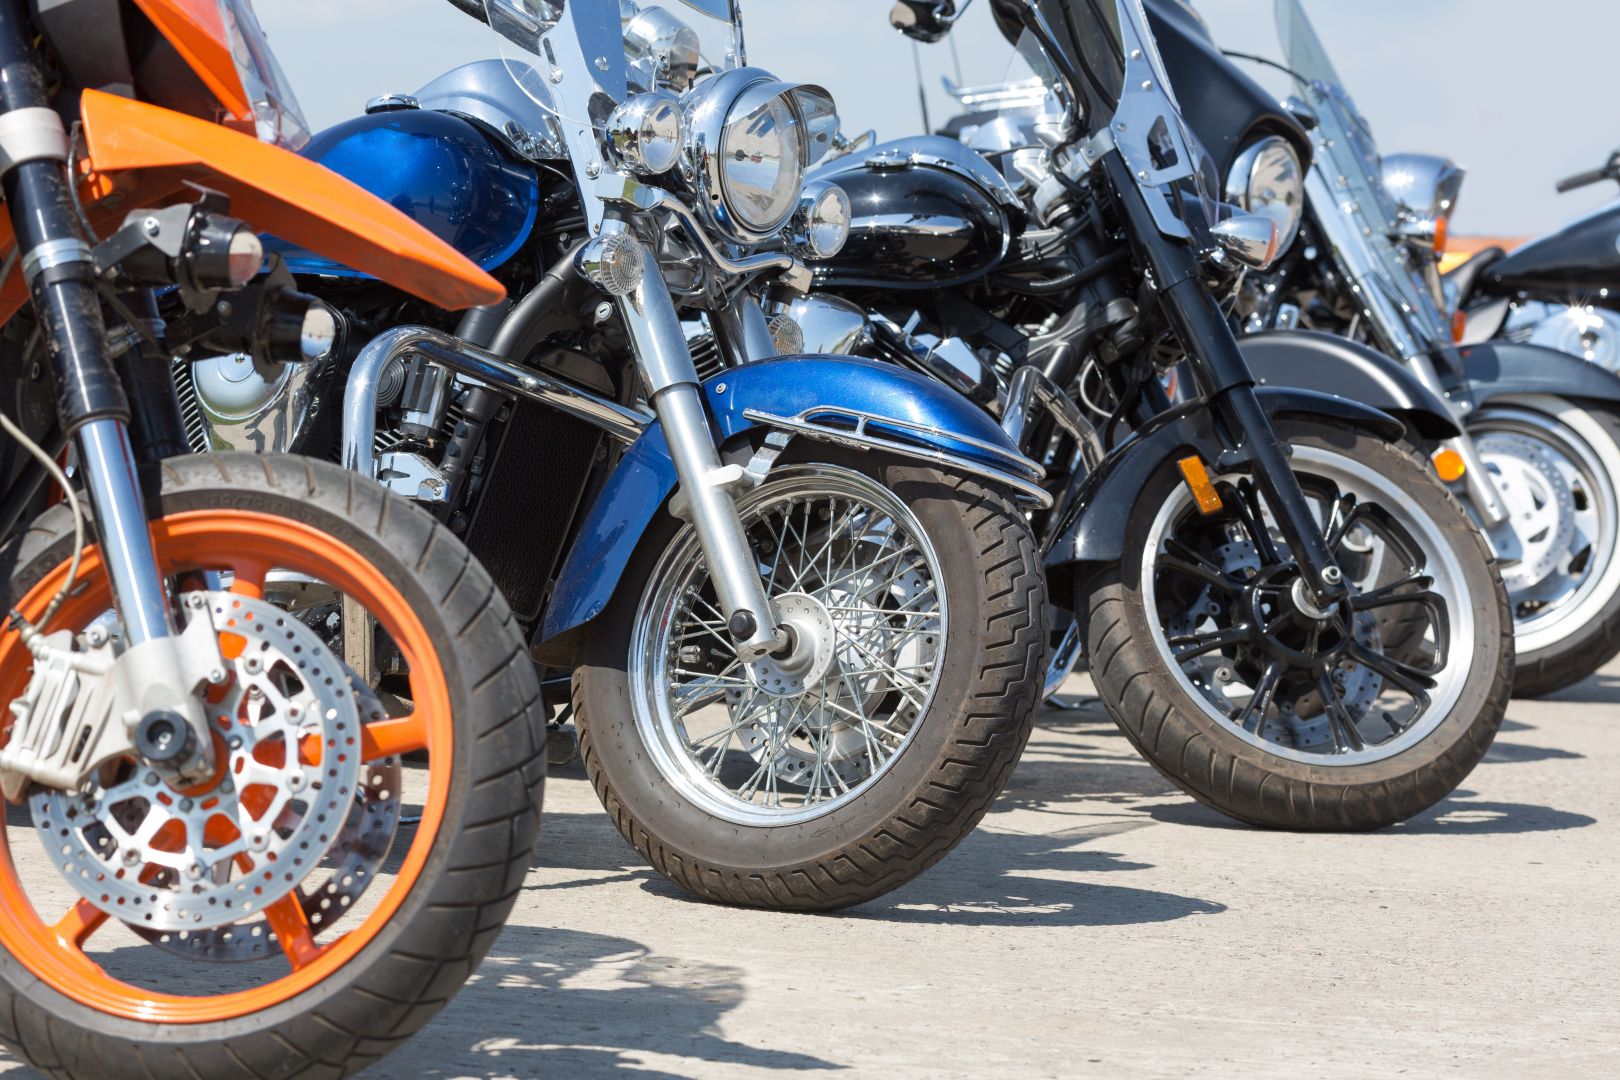 Poptávka na opravu a seřízení dvourychlostního mopedu Babetty (Motocykly, čtyřkolky) - Praha